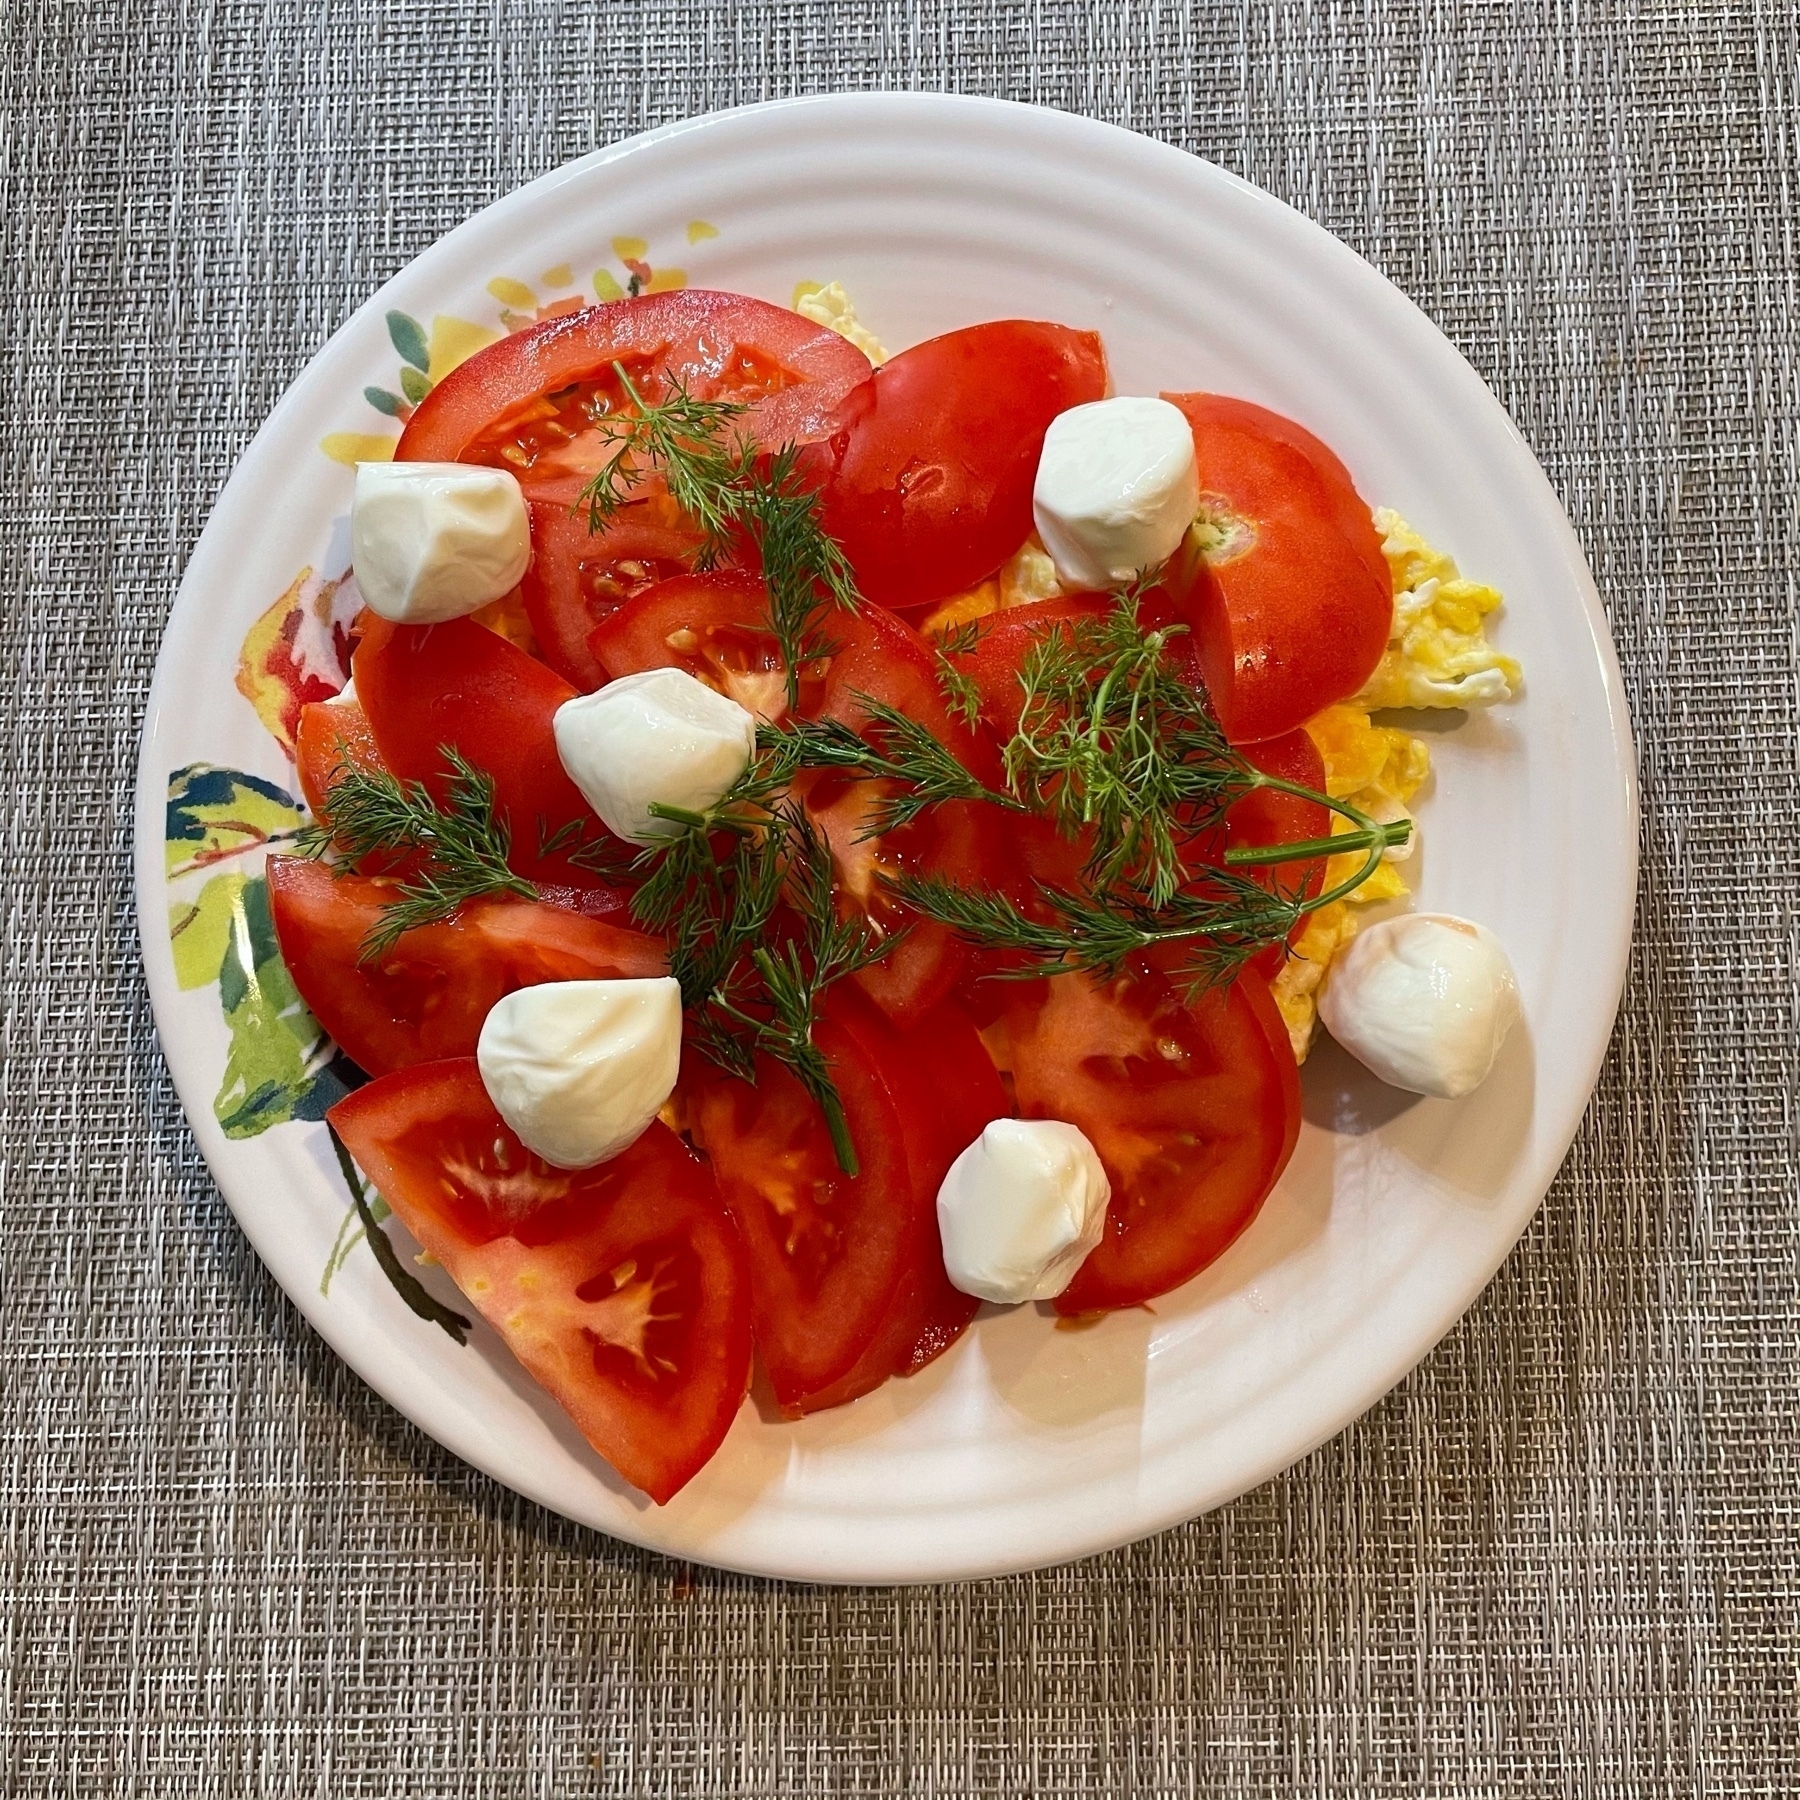 A bright plate of eggs, tomato, mozzarella, and dill